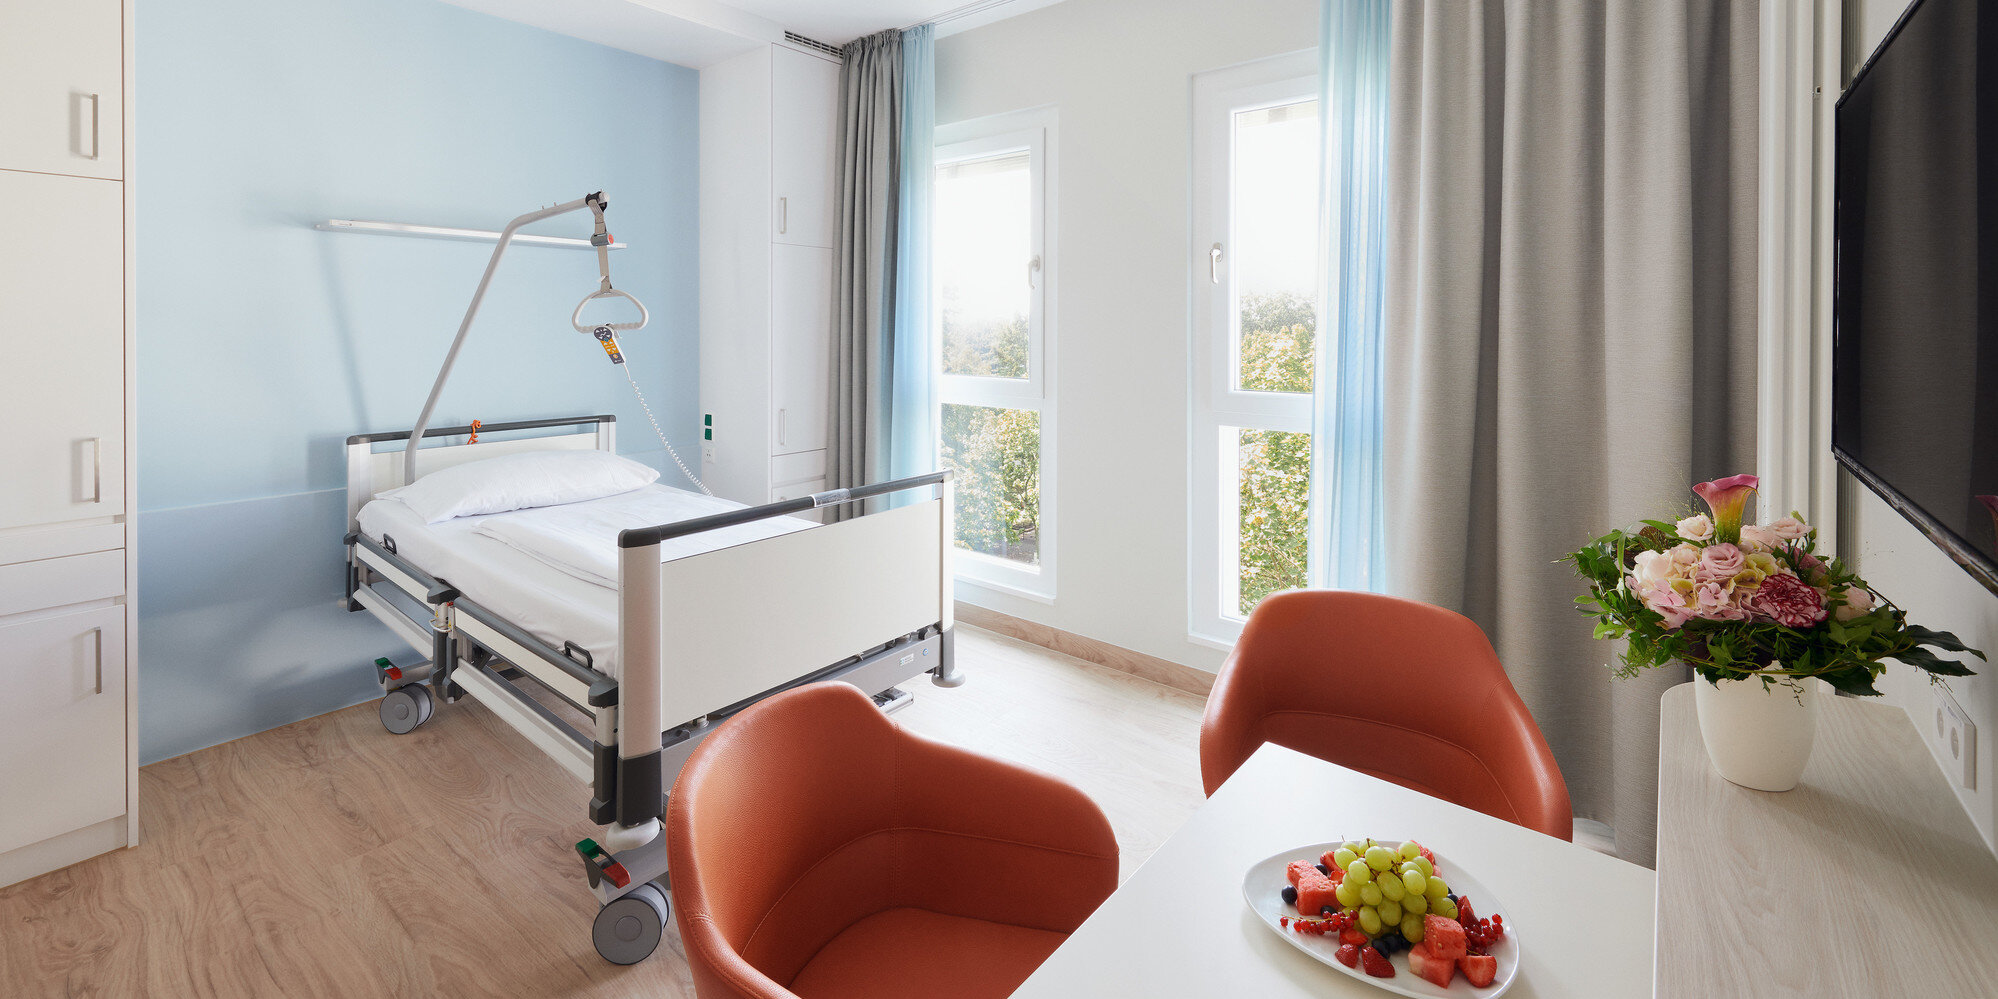 Blick in ein modern eingrichtetes Komfortzimmer des Martin Luther Krankenhauses mit einem Tisch, zwei Stühlen, einem Pflegebett sowie Dekoration.